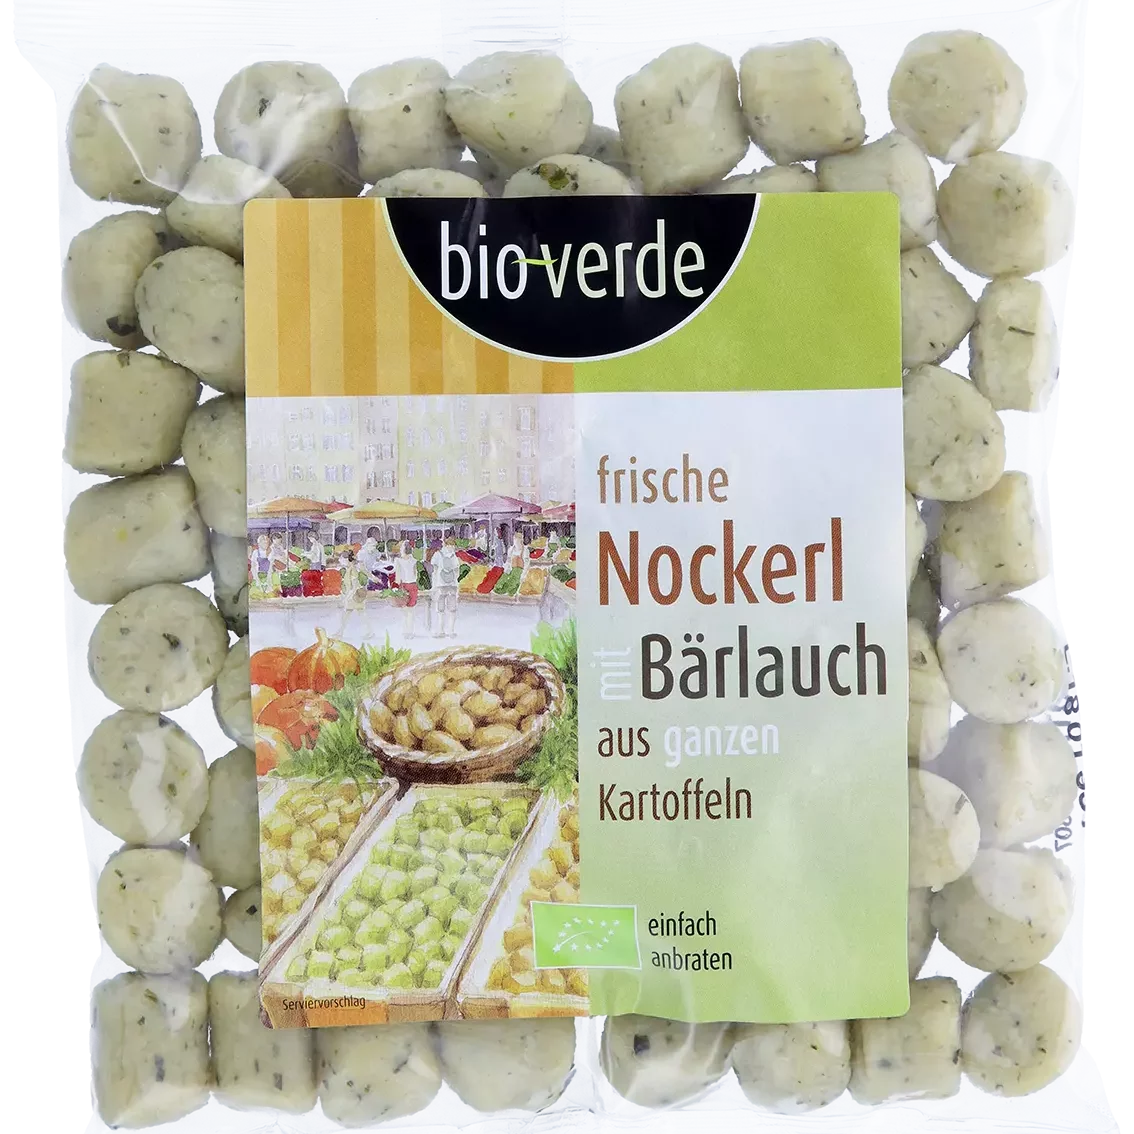 Produktfoto von Nockerl mit Bärlauch verpackt